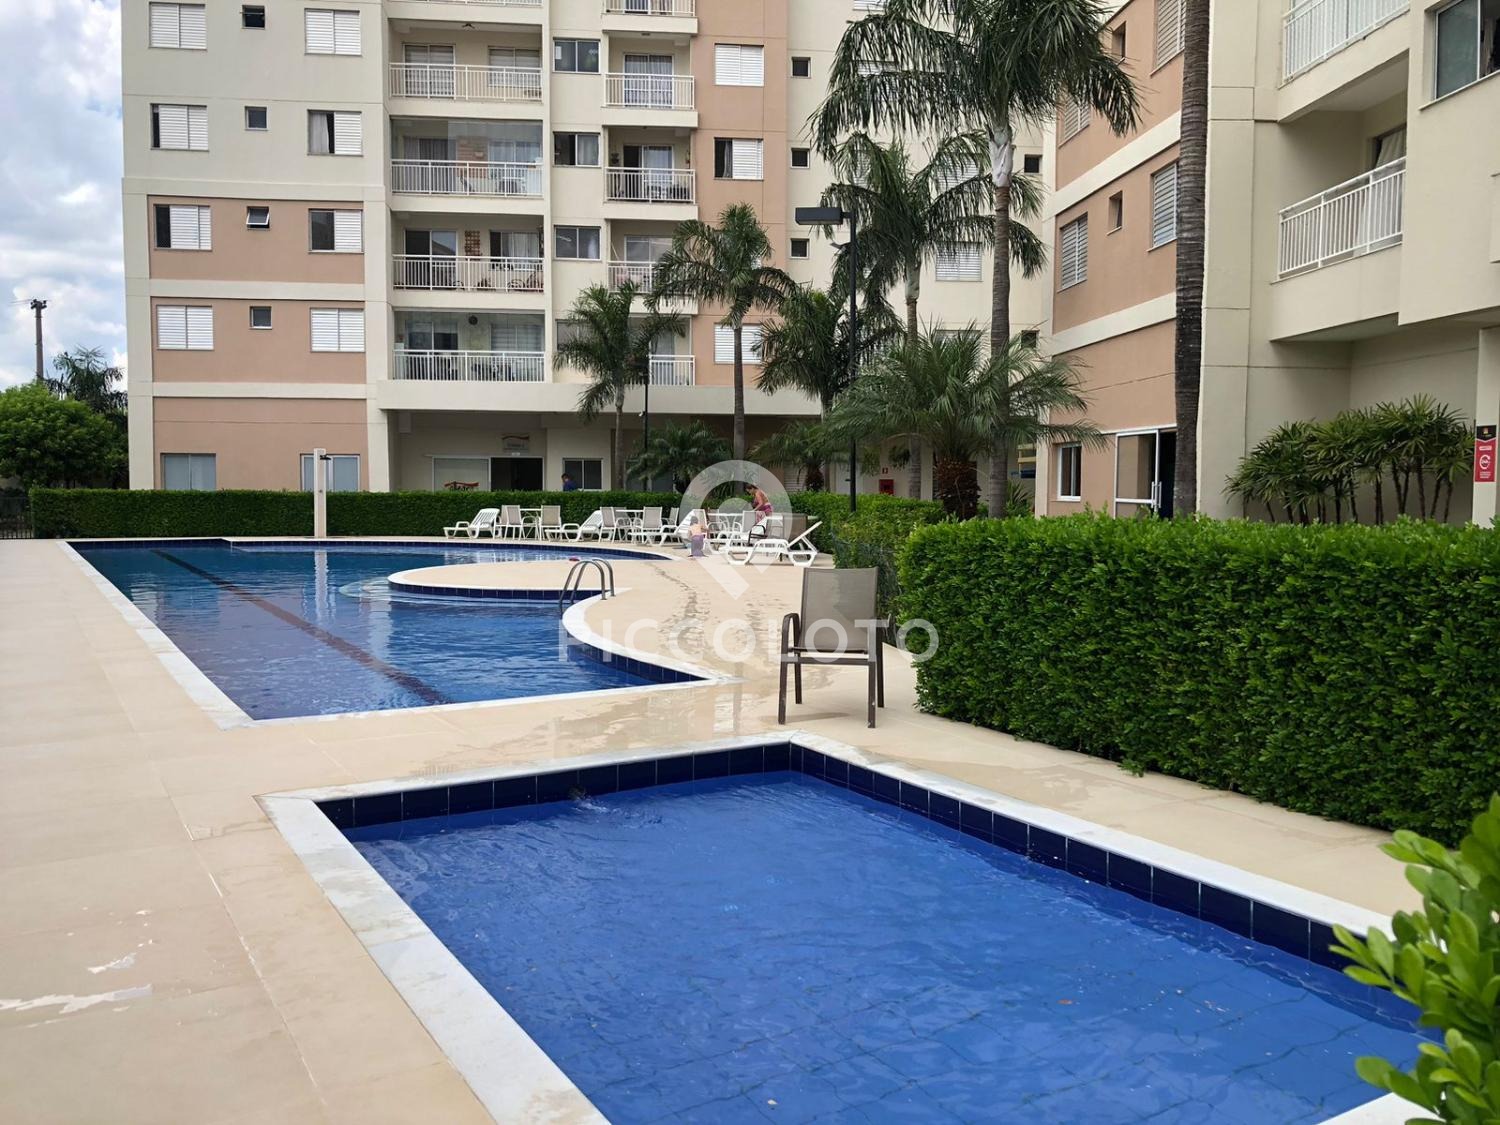 Piccoloto -Apartamento à venda no Jardim Aurelia em Campinas